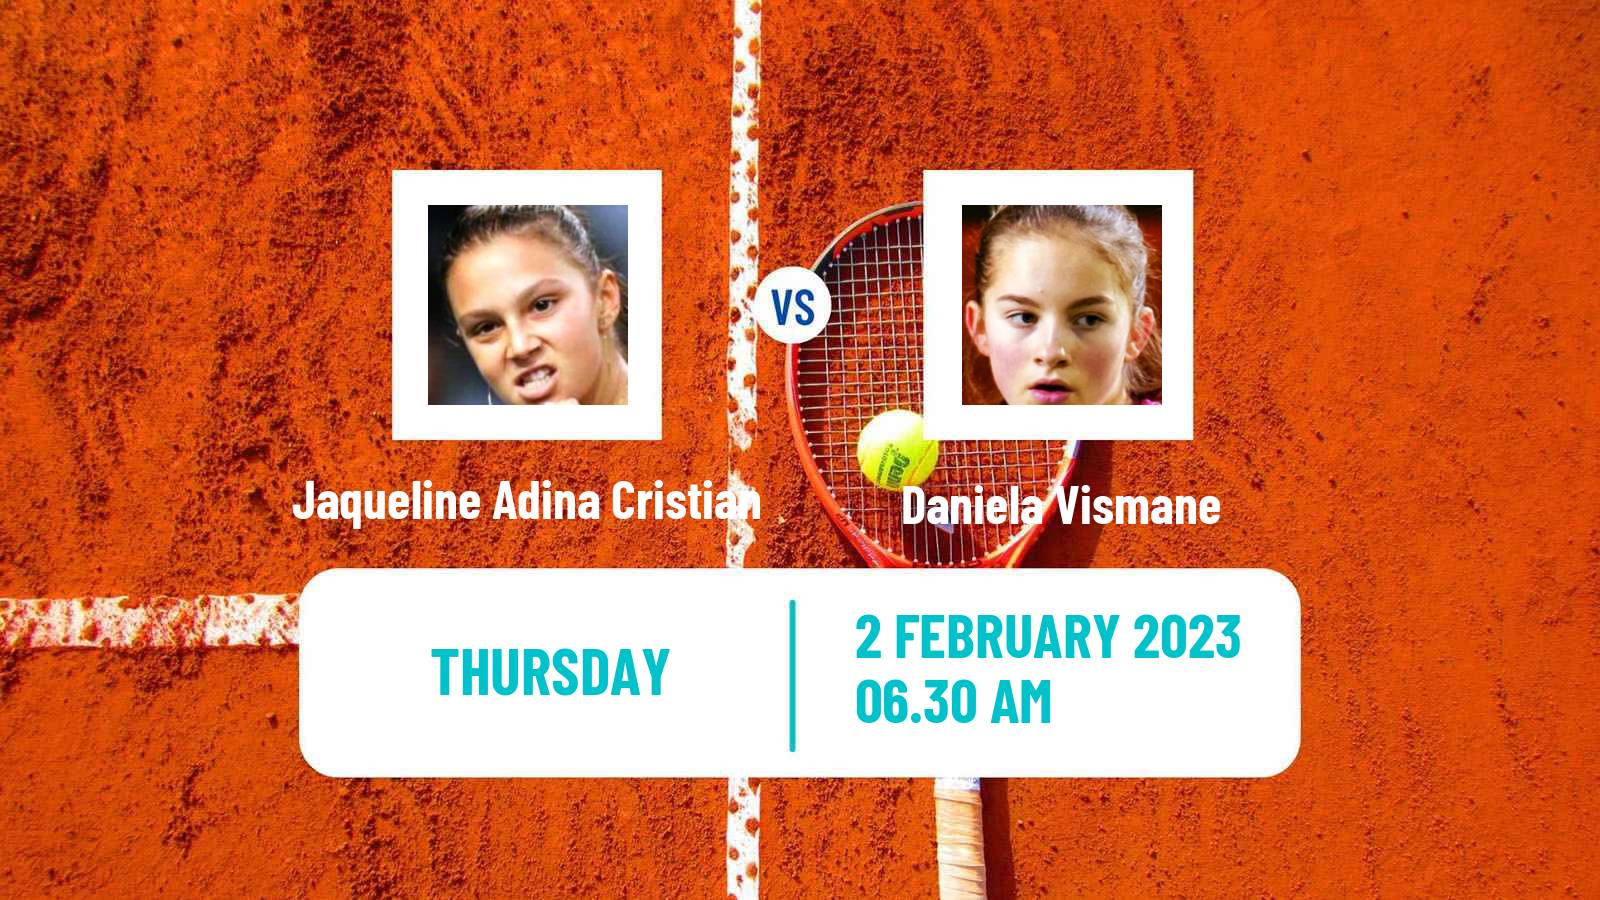 Tennis ITF Tournaments Jaqueline Adina Cristian - Daniela Vismane